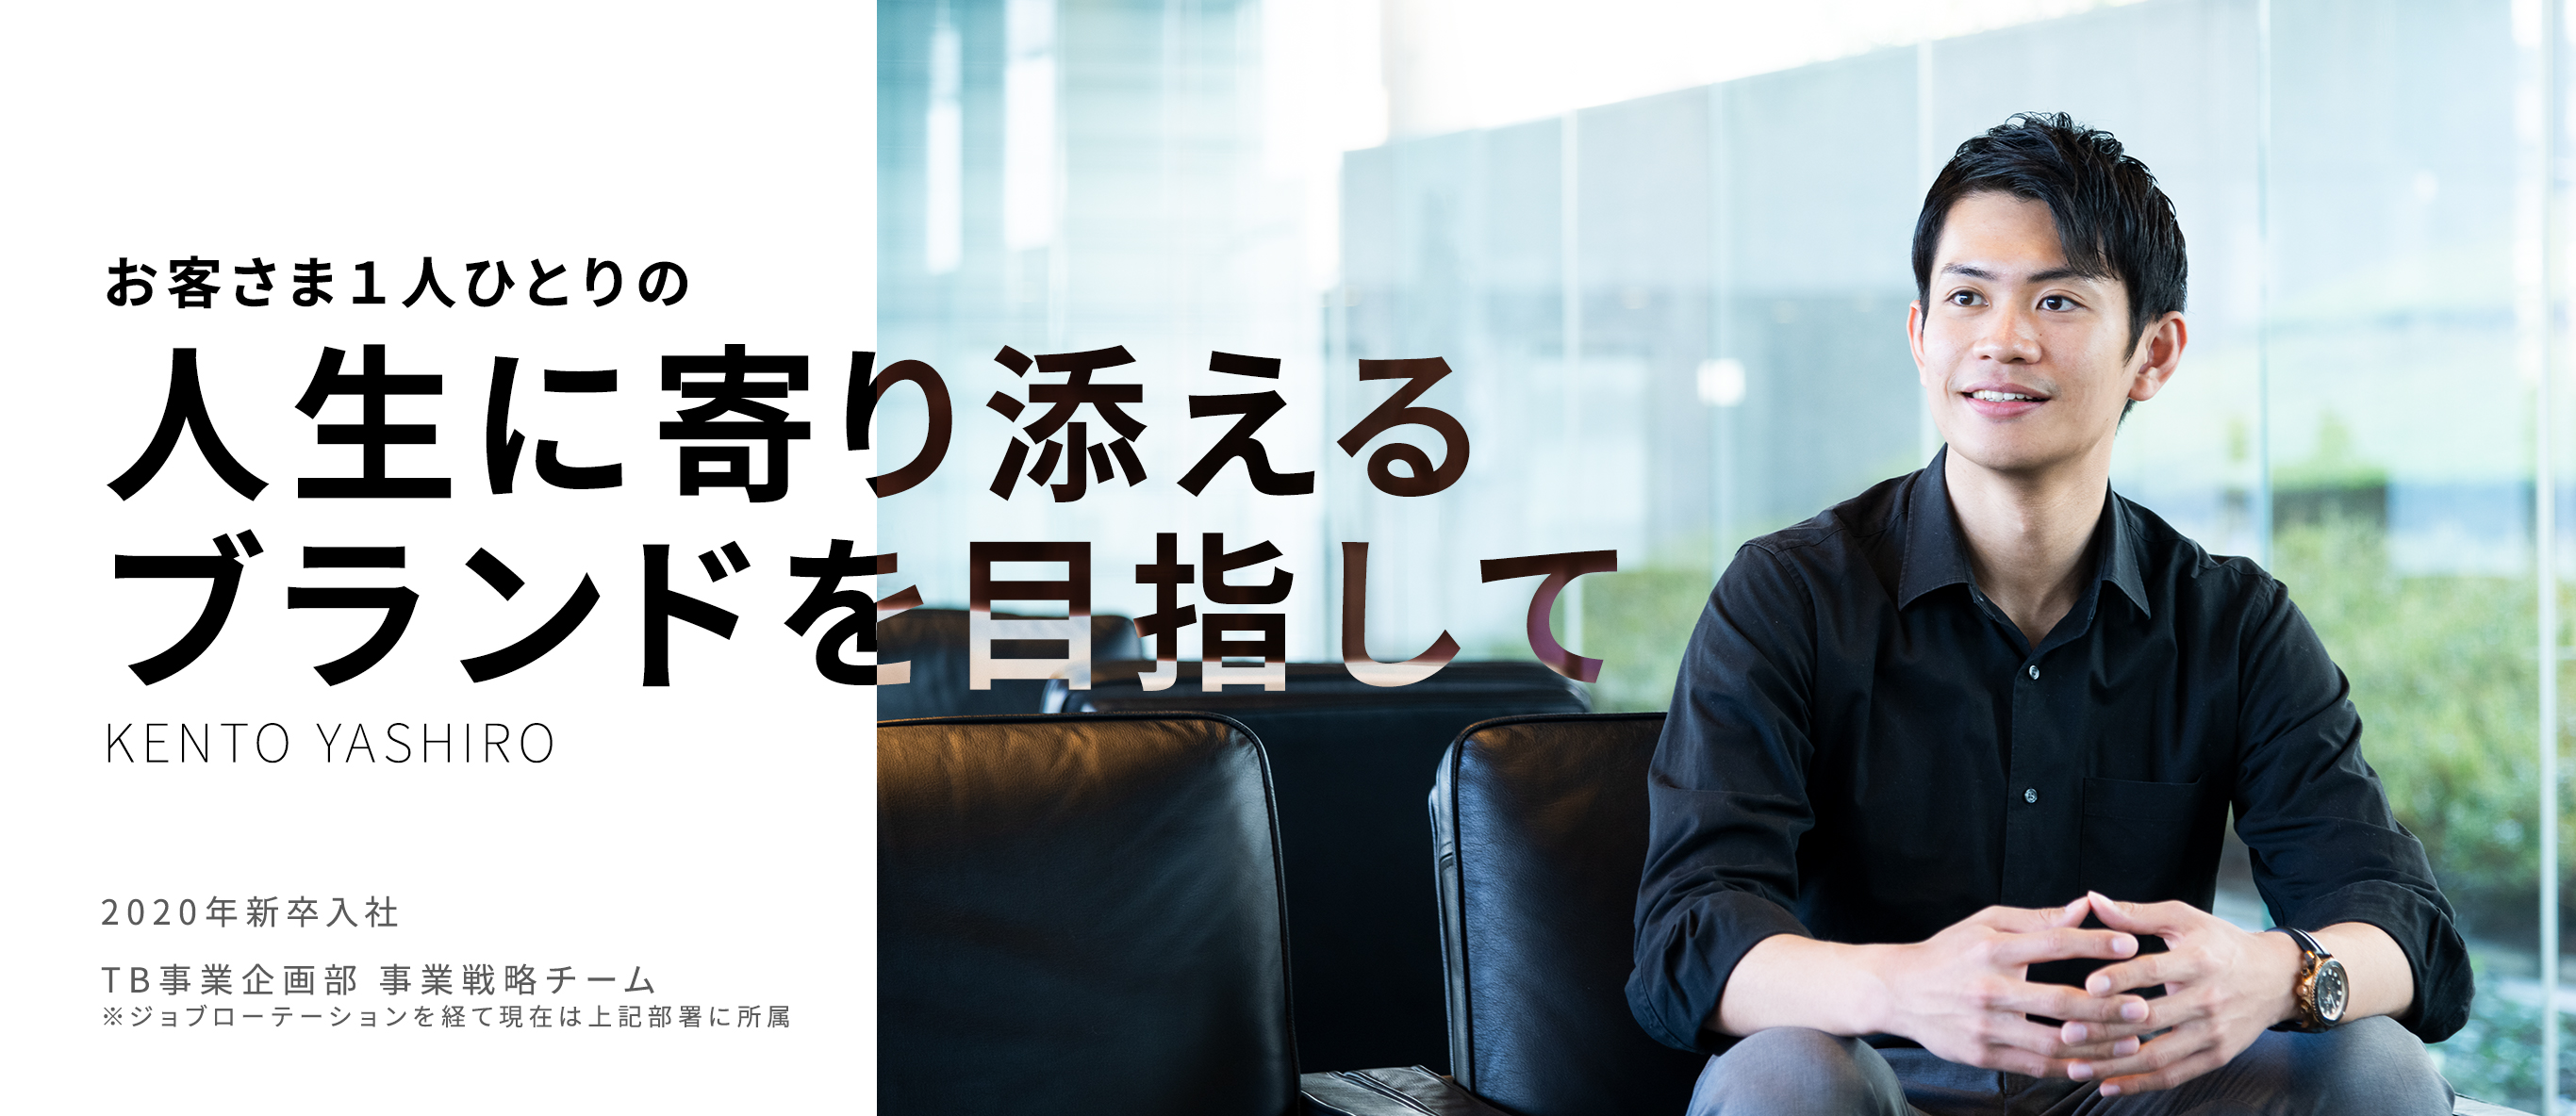 お客さま１人ひとりの人生に寄り添えるブランドを目指して Kento Yashiro 2020年新卒入社/TB事業企画部　事業戦略　屋代健登